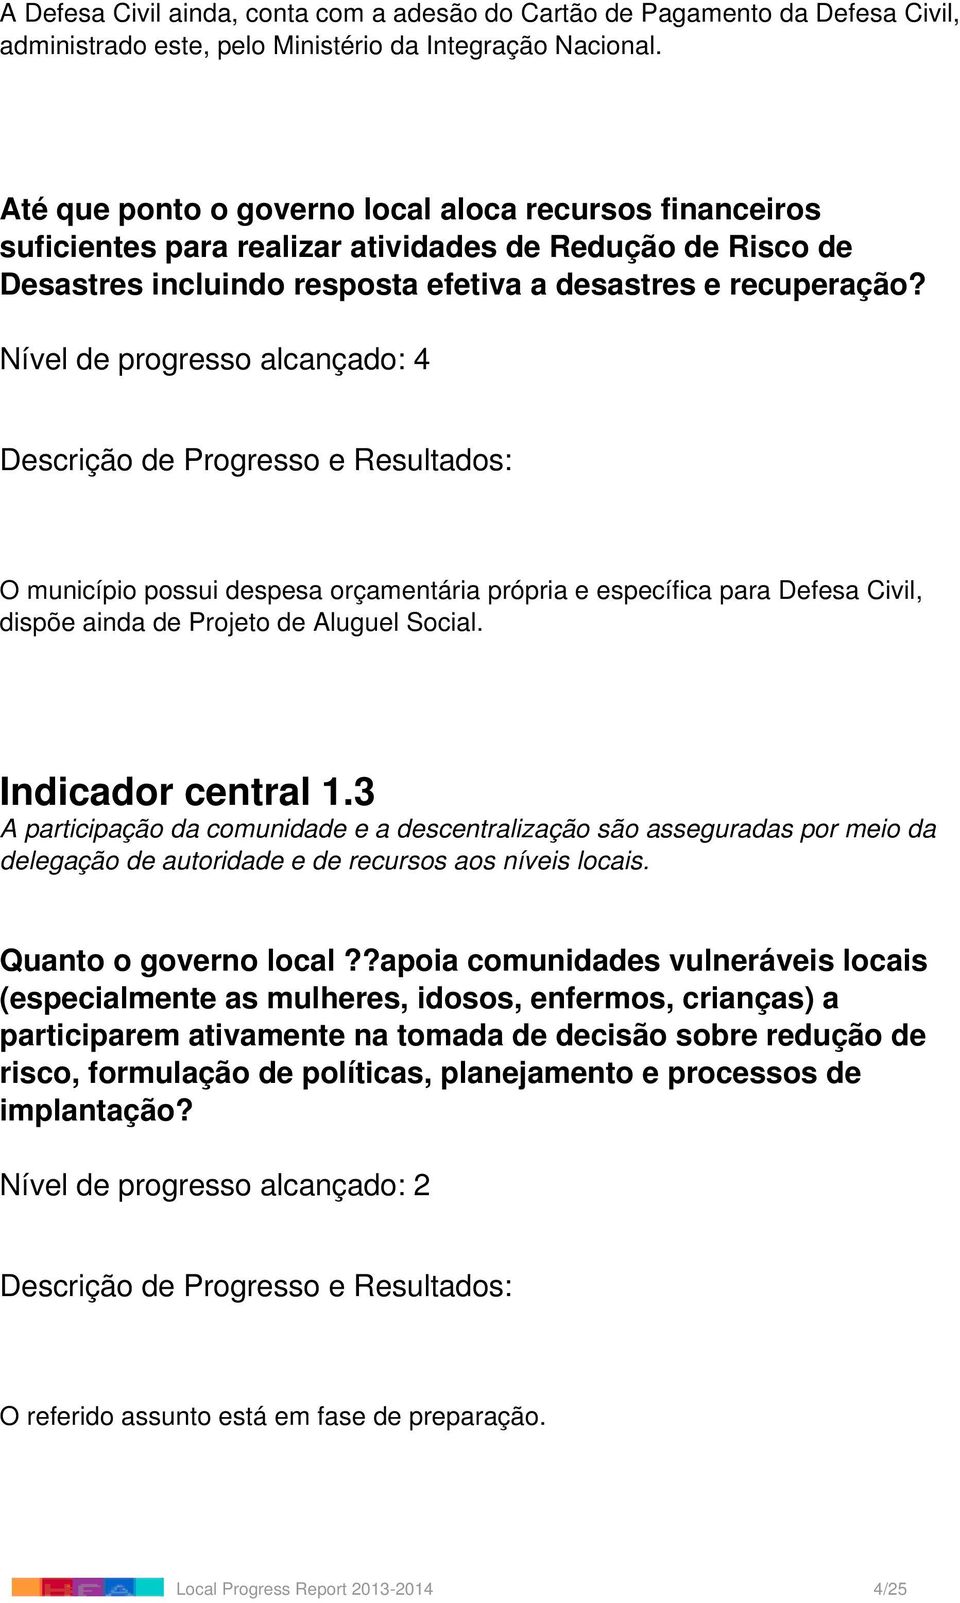 O município possui despesa orçamentária própria e específica para Defesa Civil, dispõe ainda de Projeto de Aluguel Social. Indicador central 1.